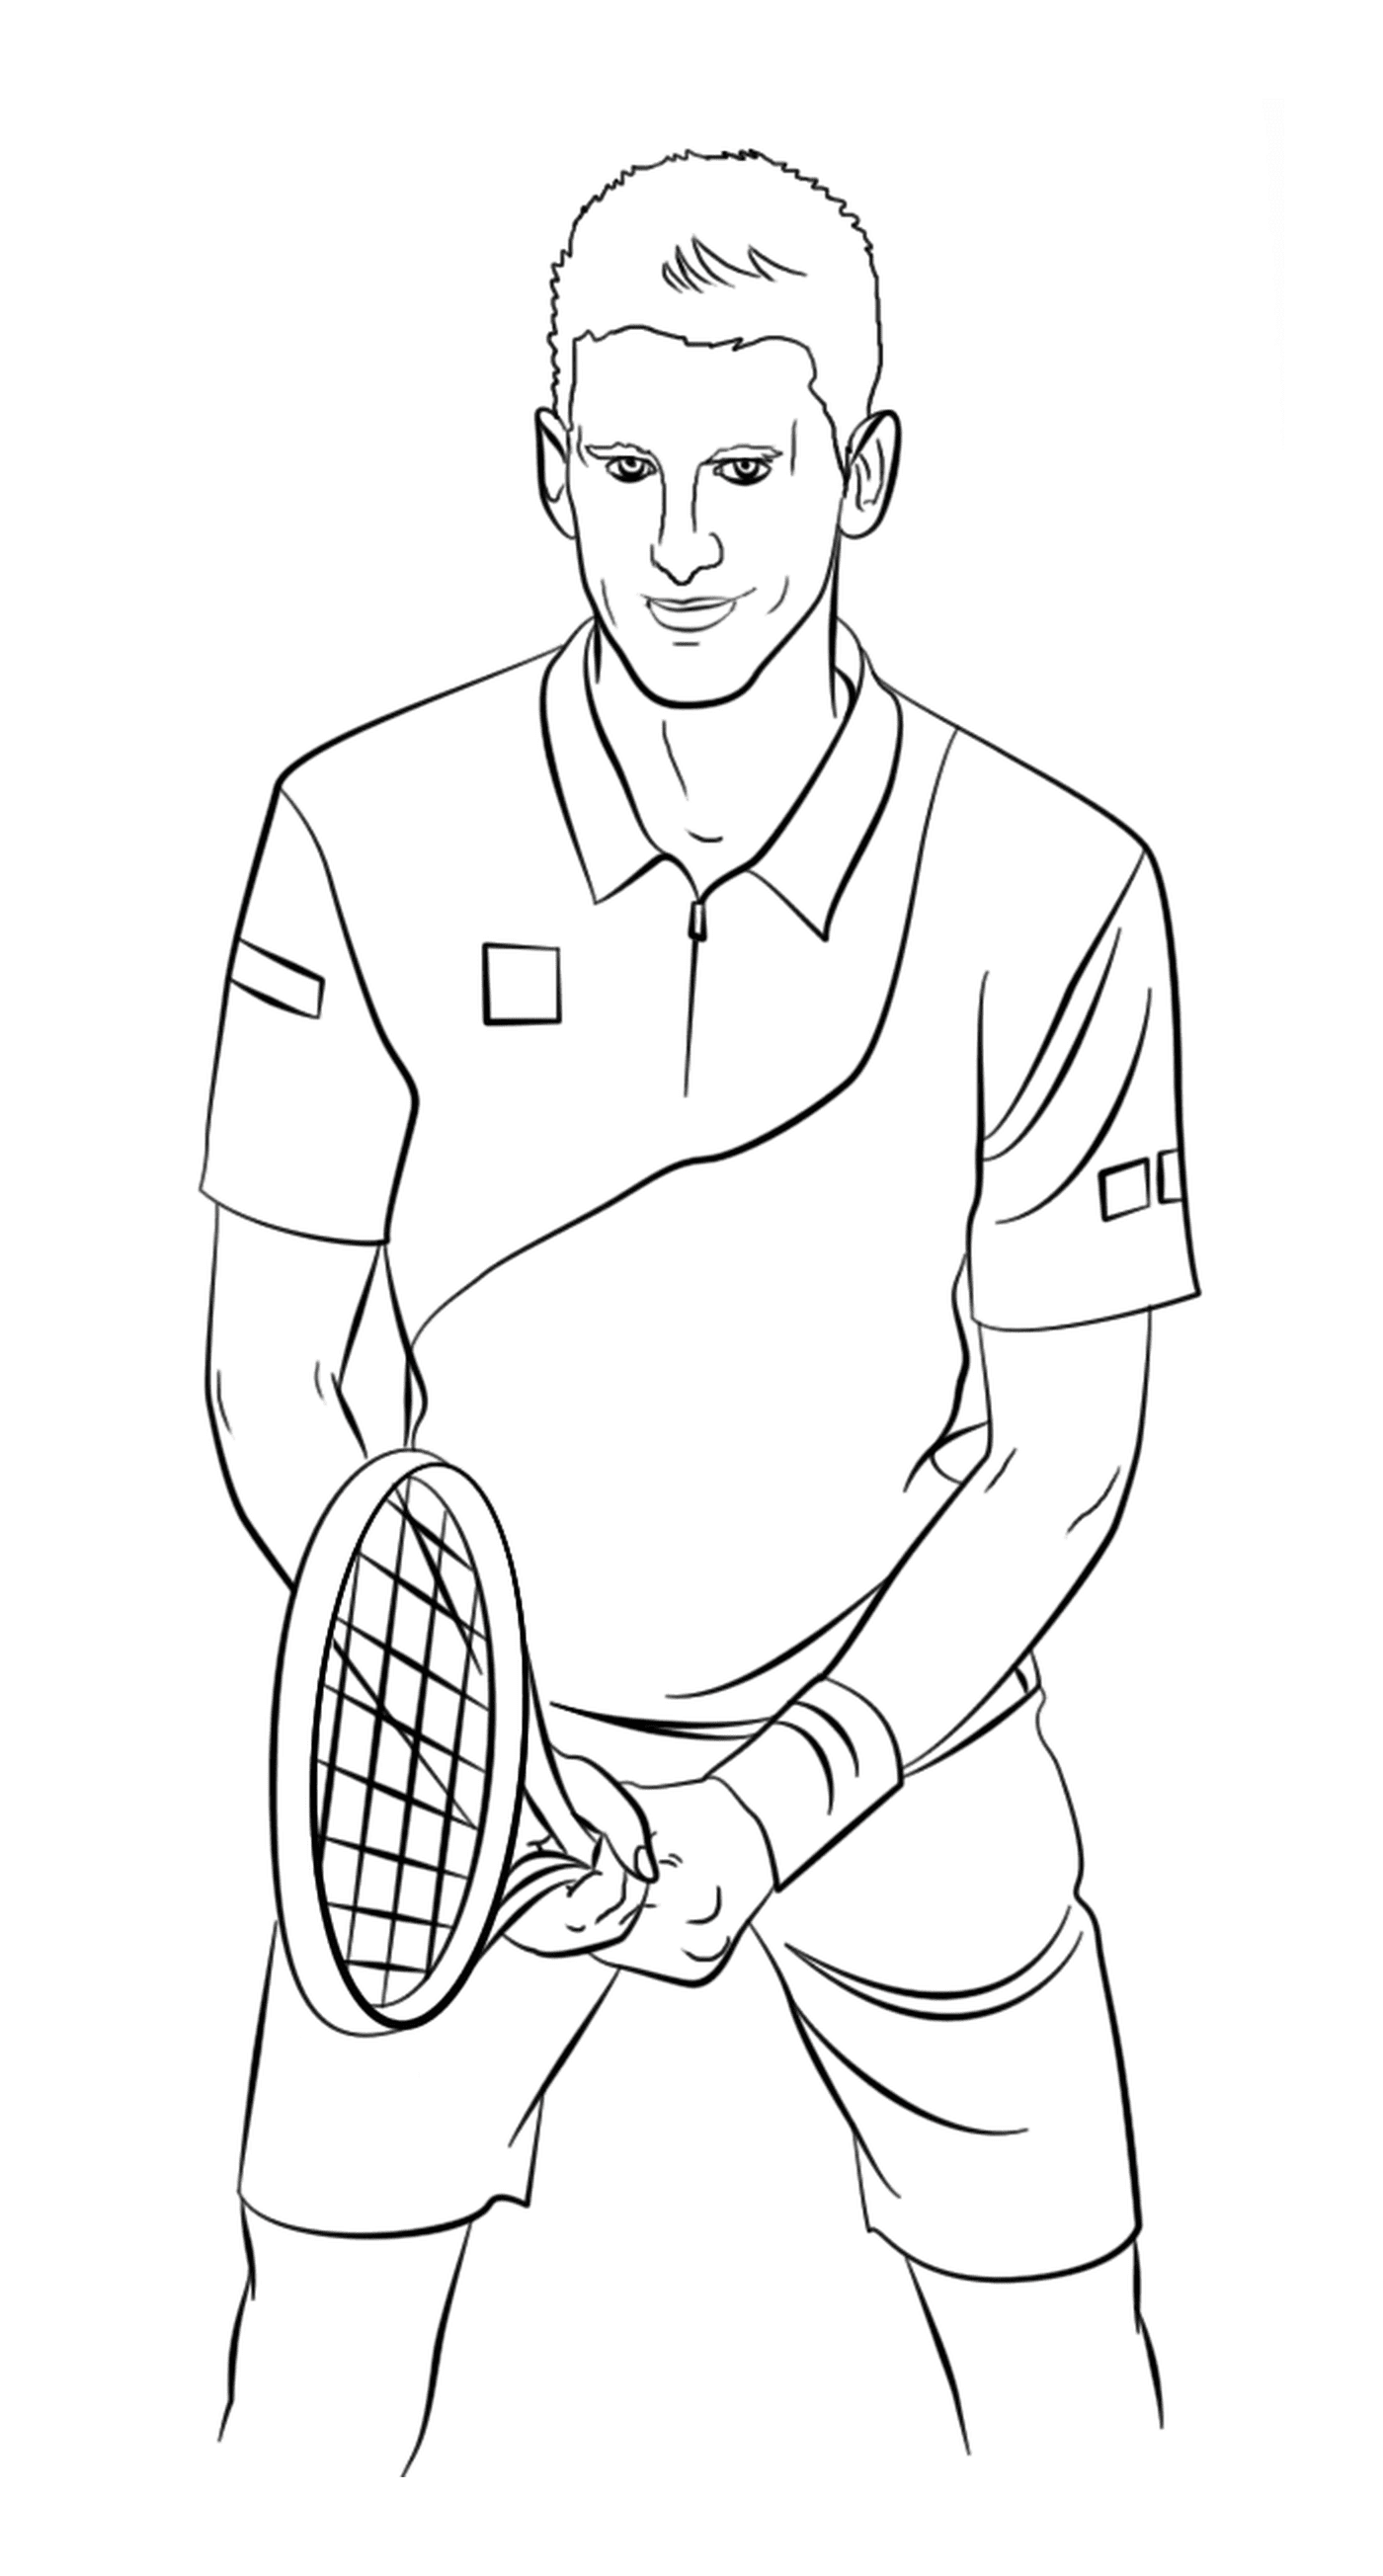   Un joueur de tennis professionnel 